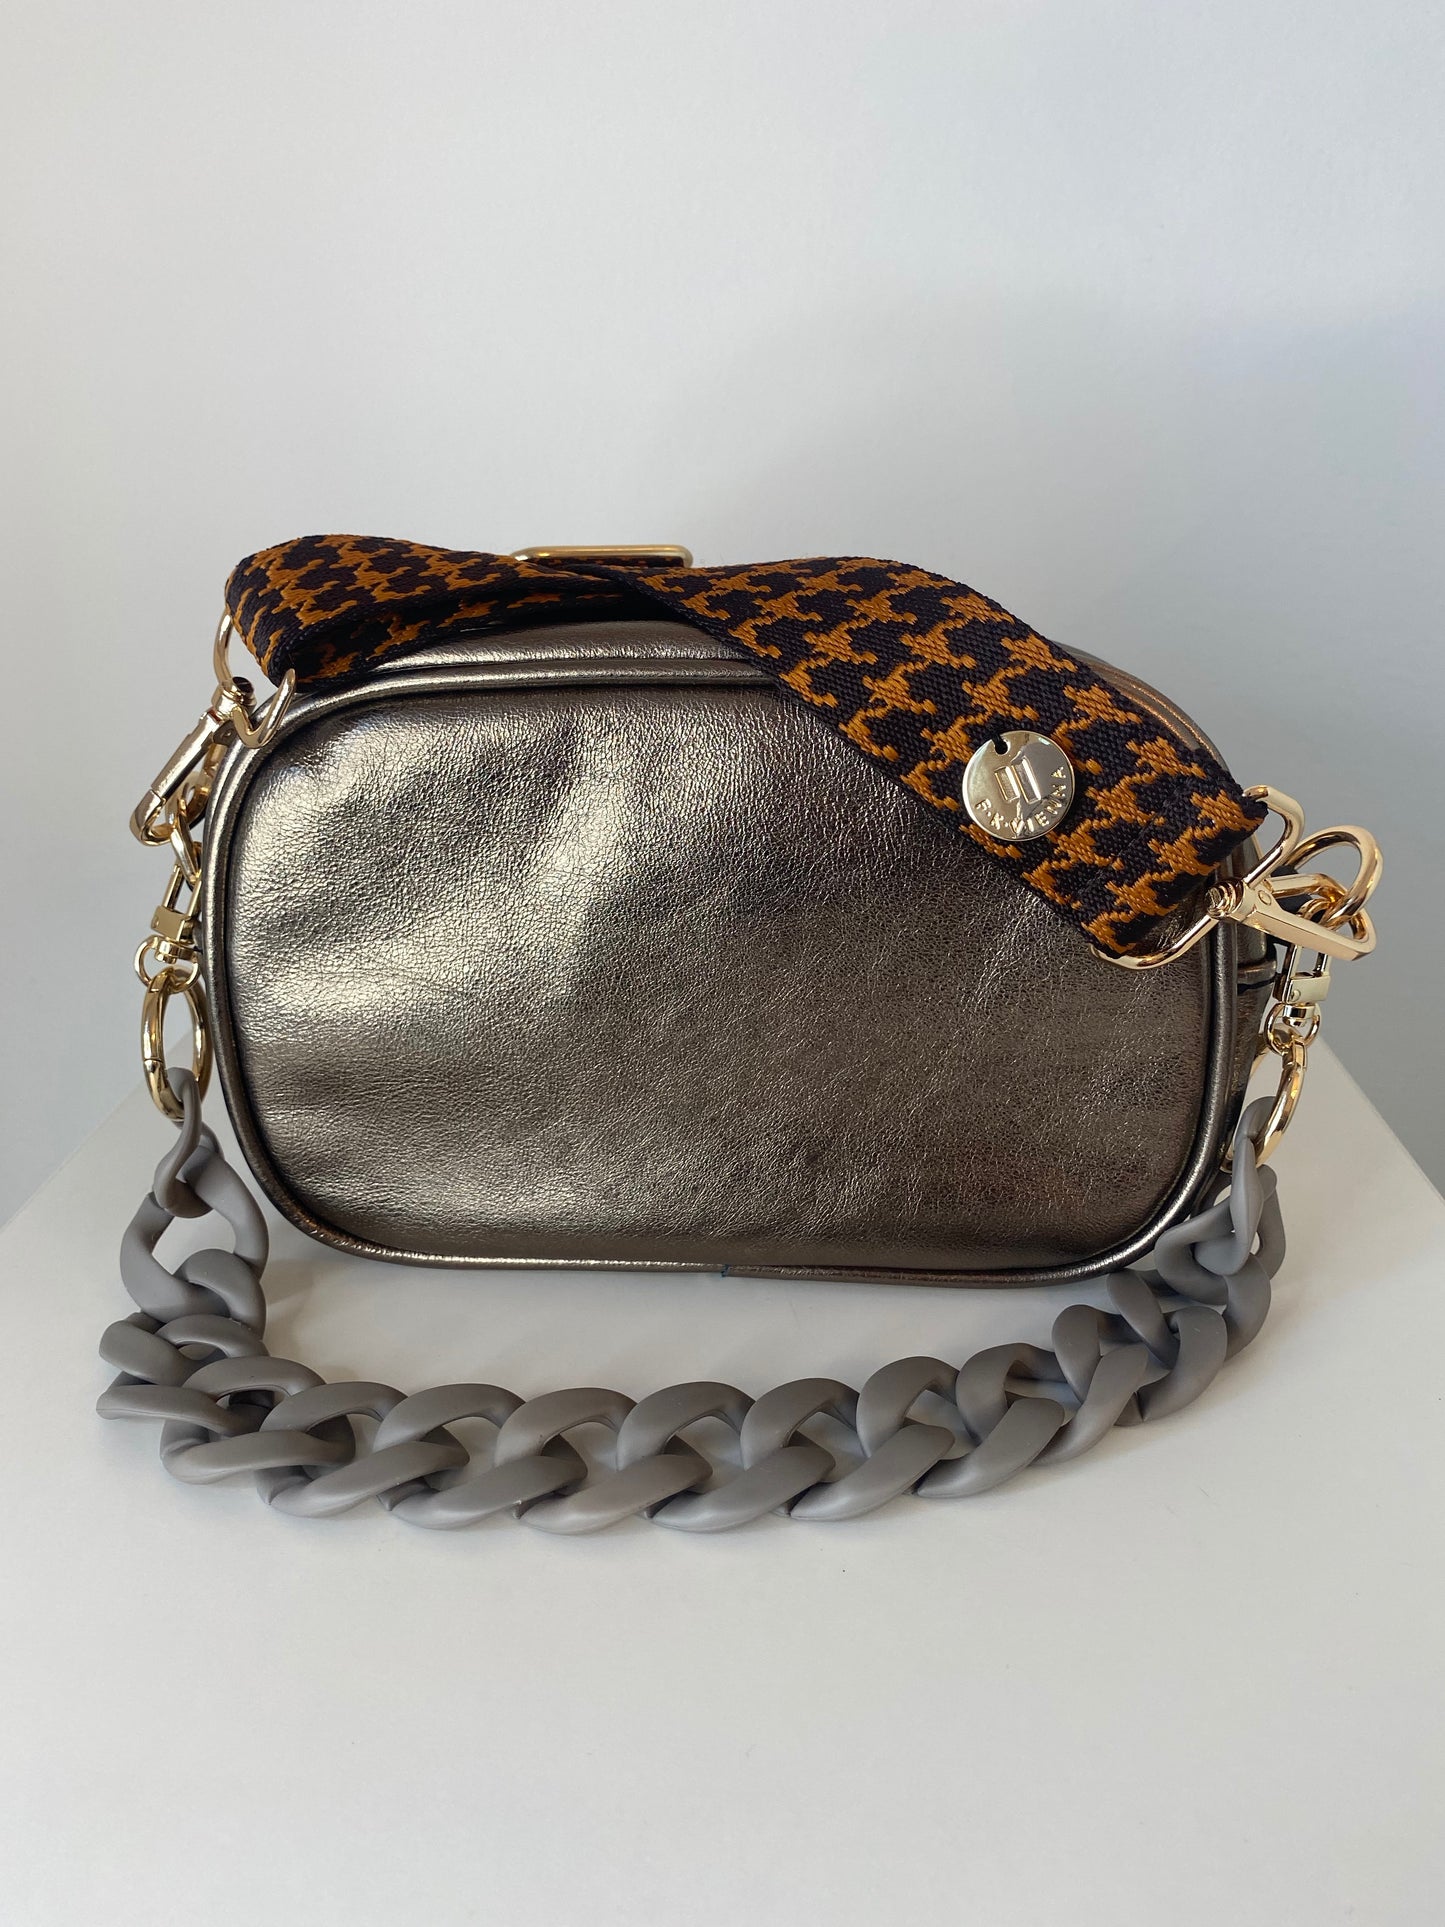 Shoulder Strap Bag Leopard brown / Silver Hardware